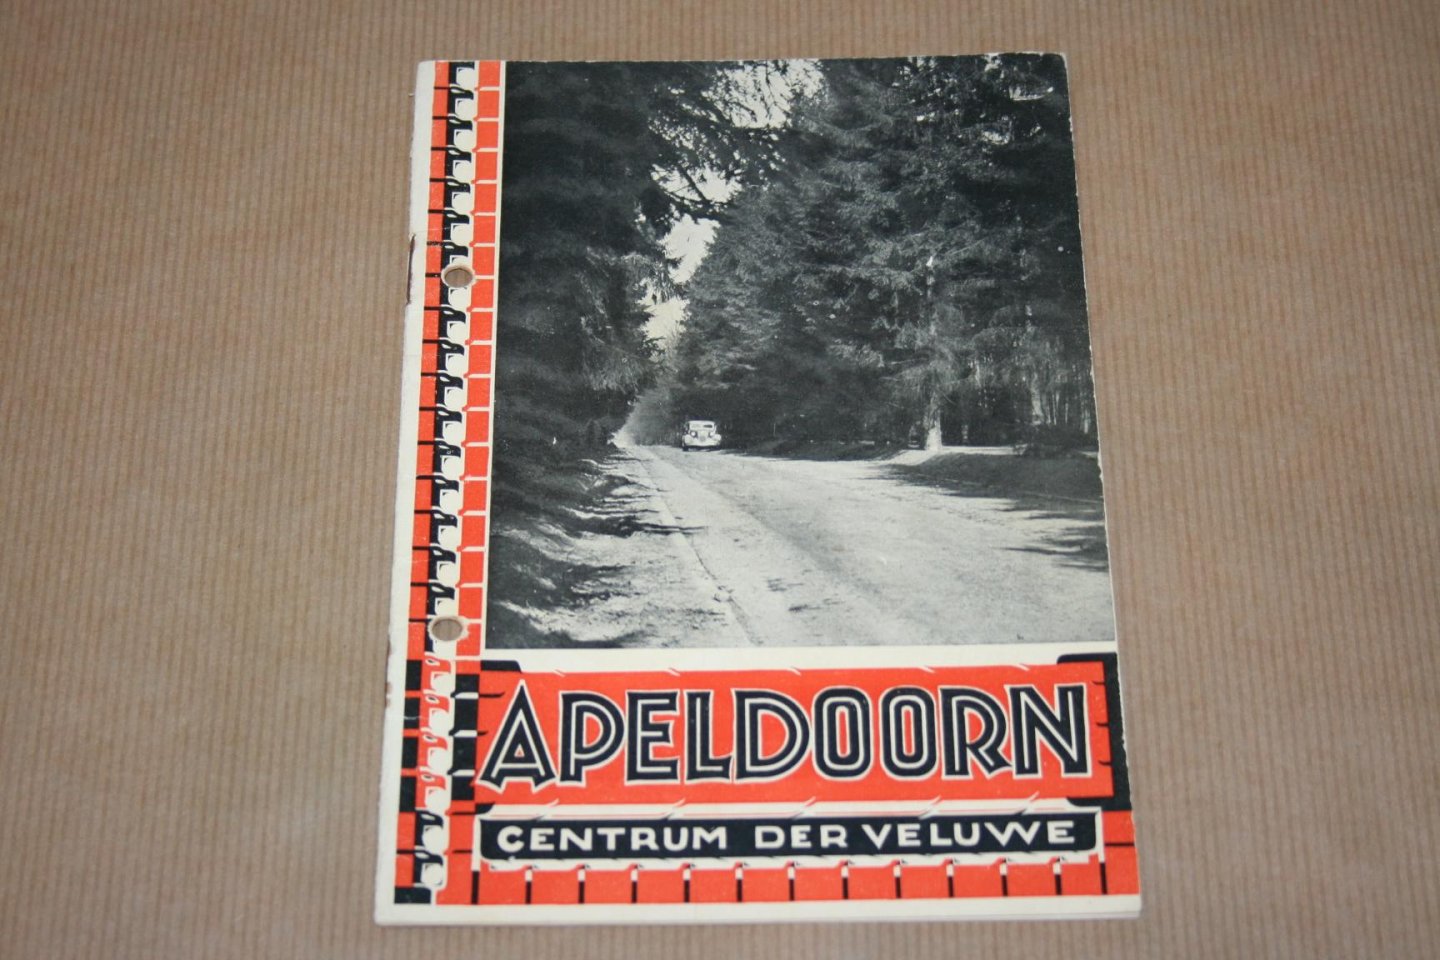  - Apeldoorn - Centrum der Veluwe - Uitgave 1936